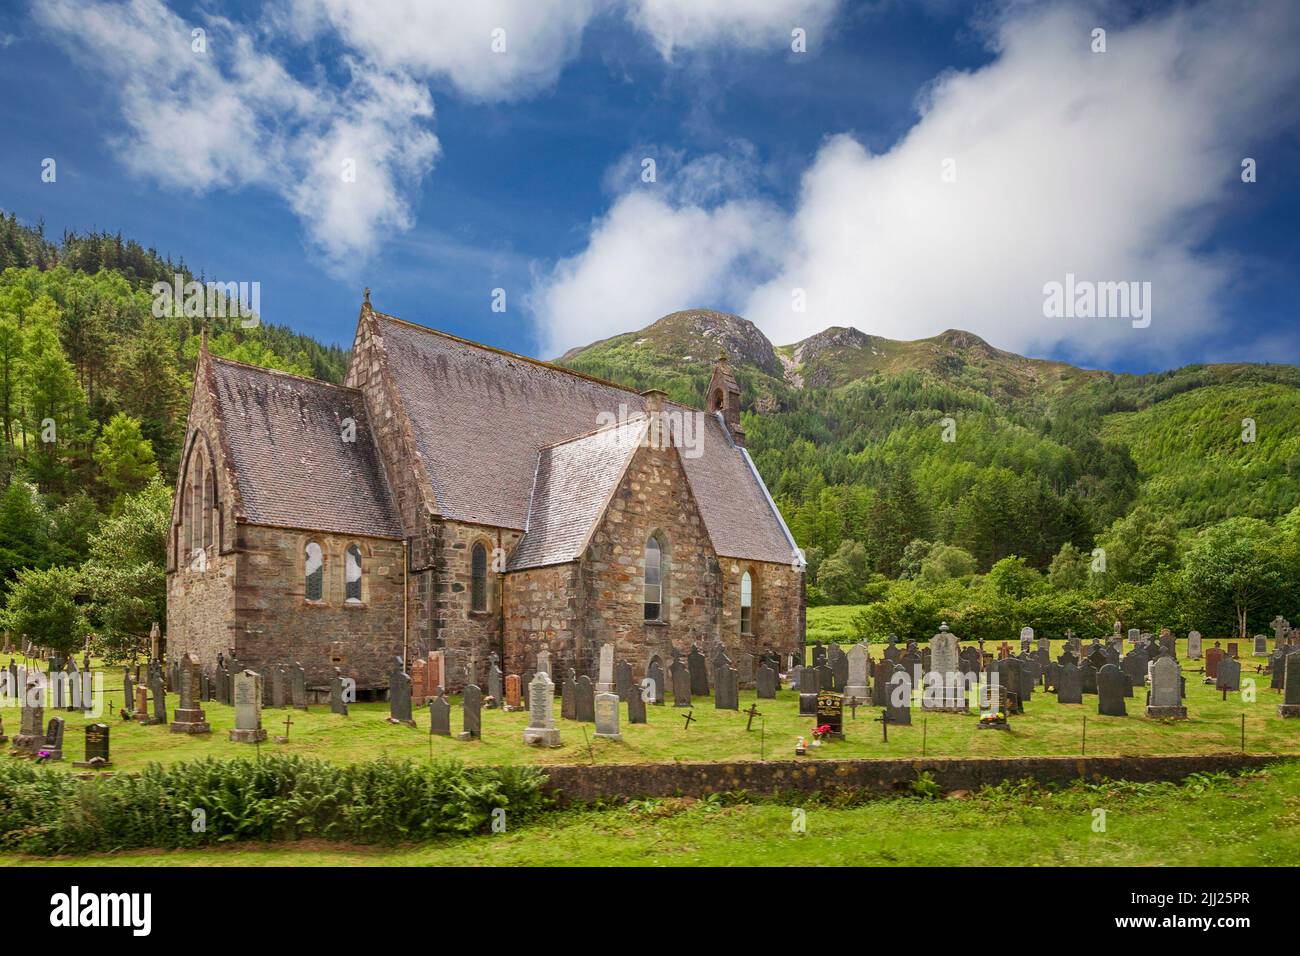 St Johns Church in Ballachulish, Scotland, UK Stock Photo